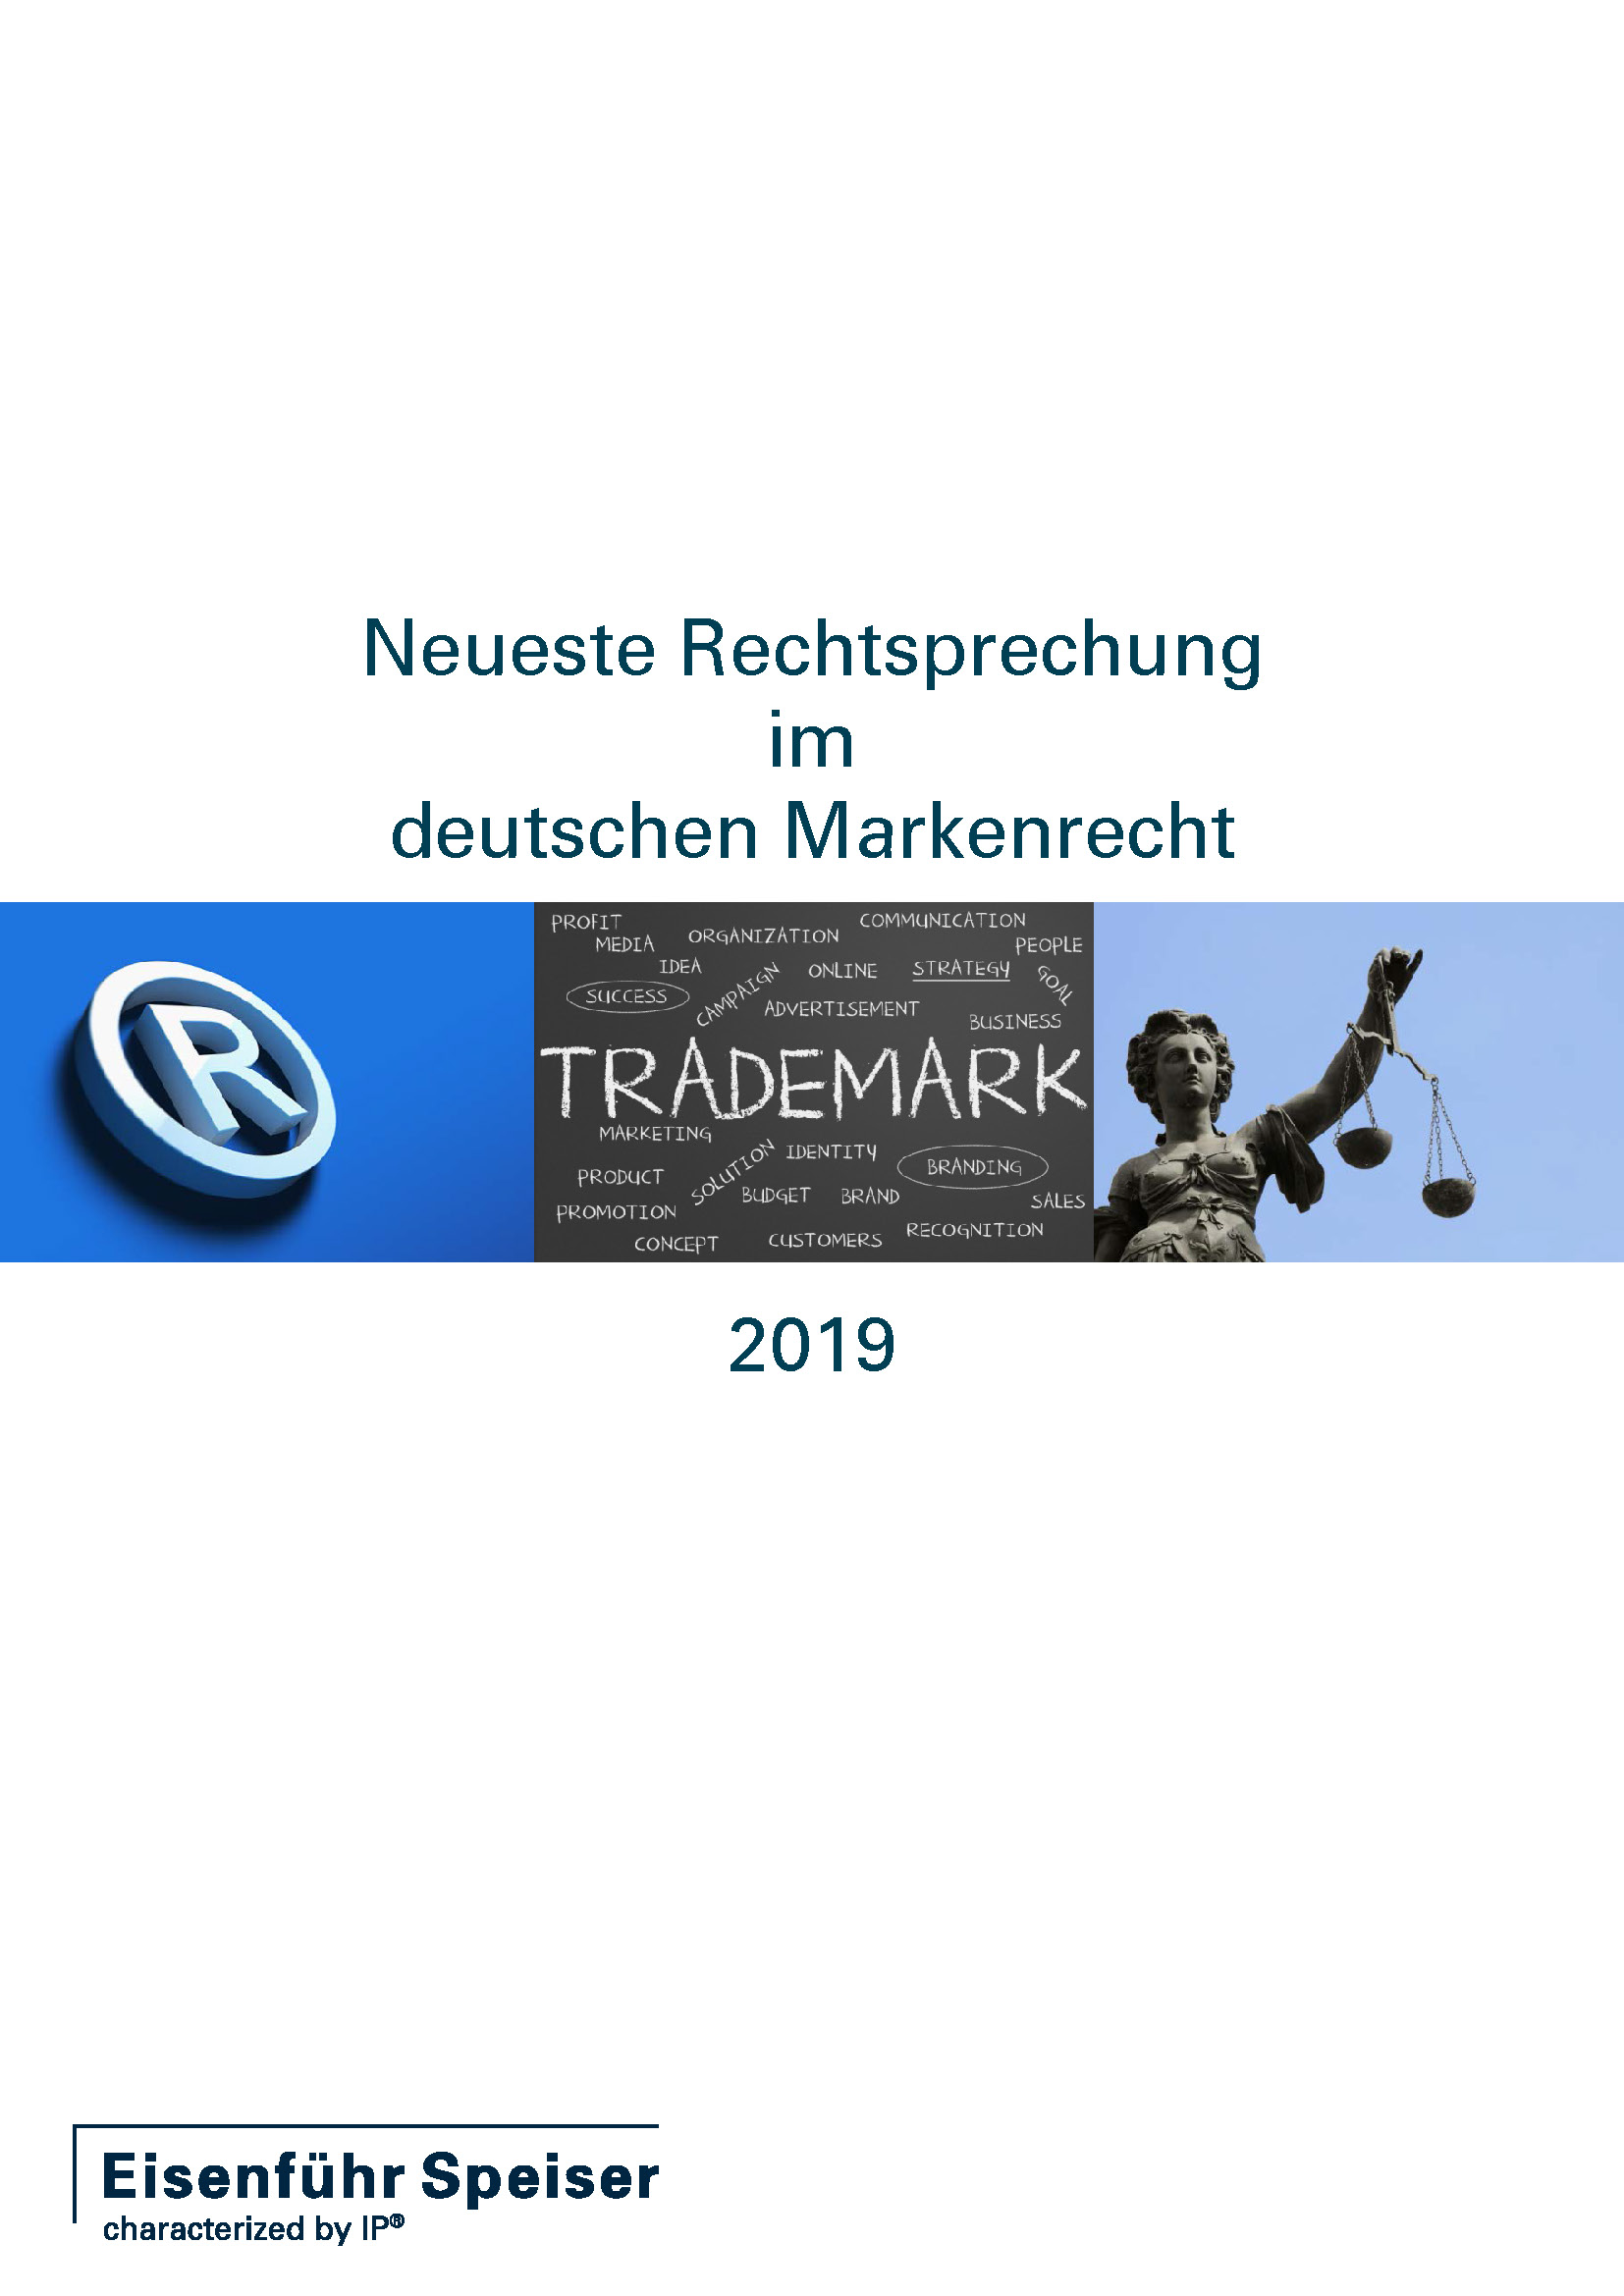 Neueste Rechtsprechung im deutschen Markenrecht 2019